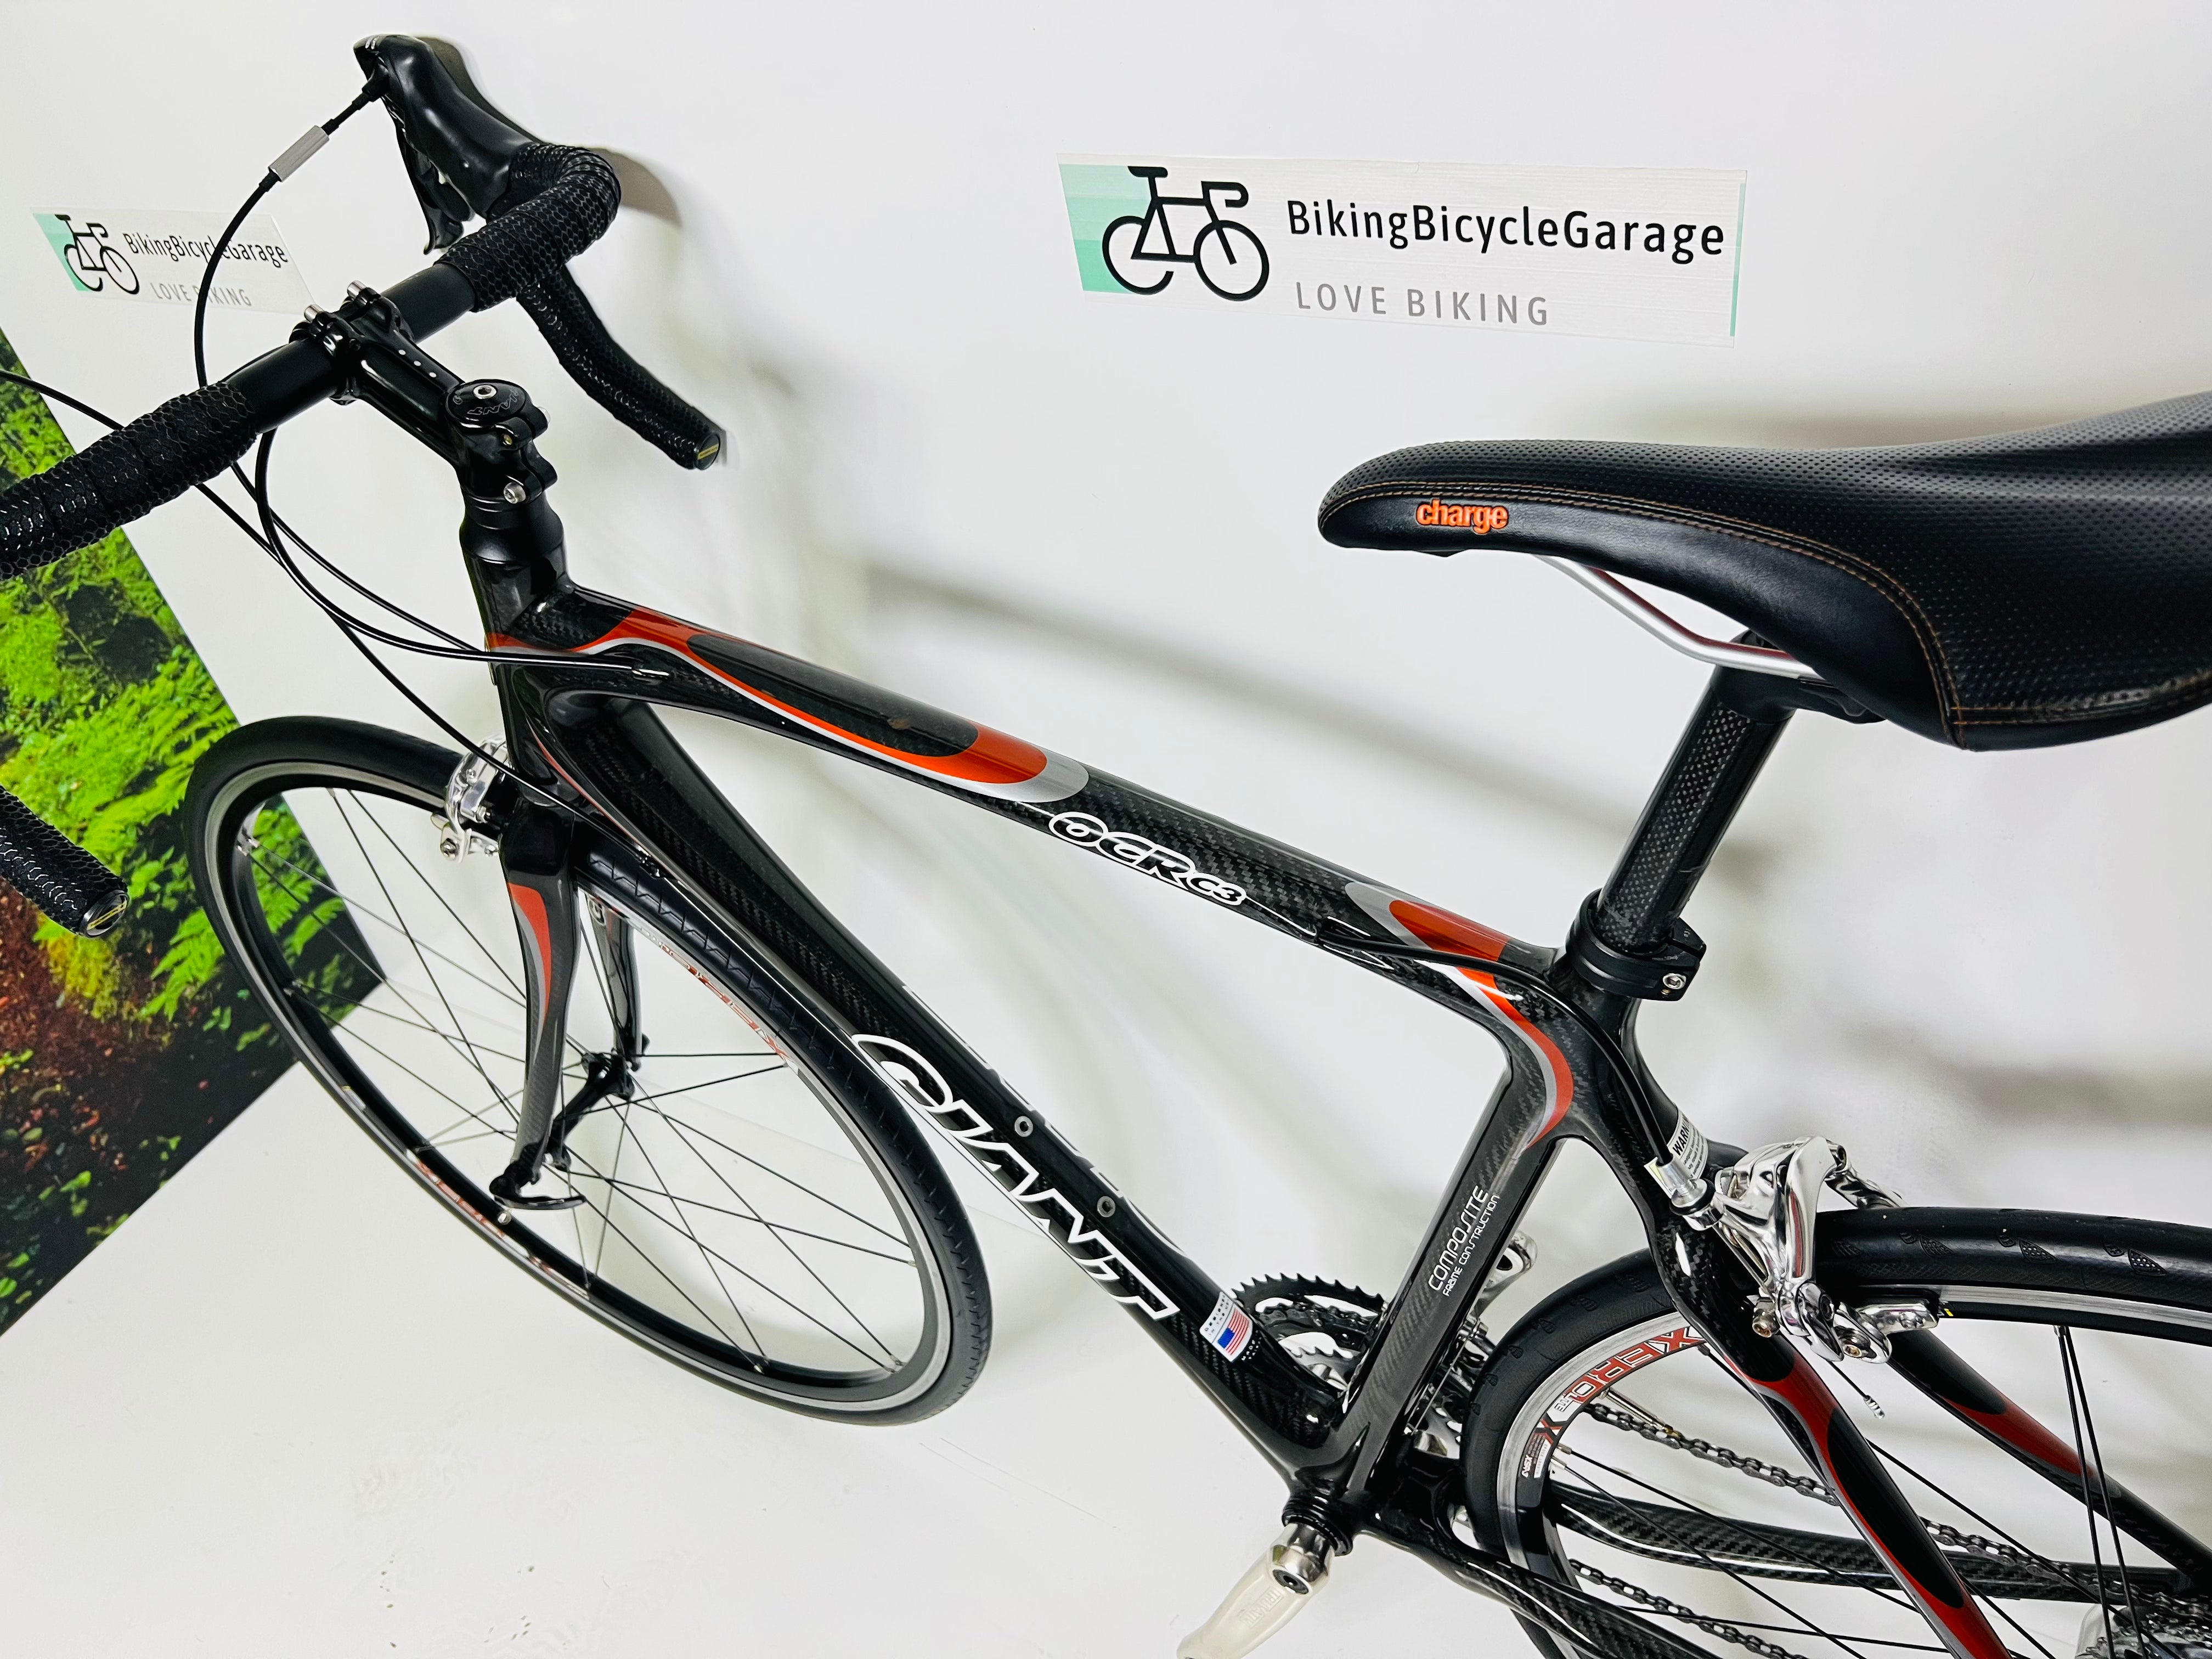 Giant OCR C3, Carbon Fiber Road Bike, 19 Pounds! 2005, Size: 54cm